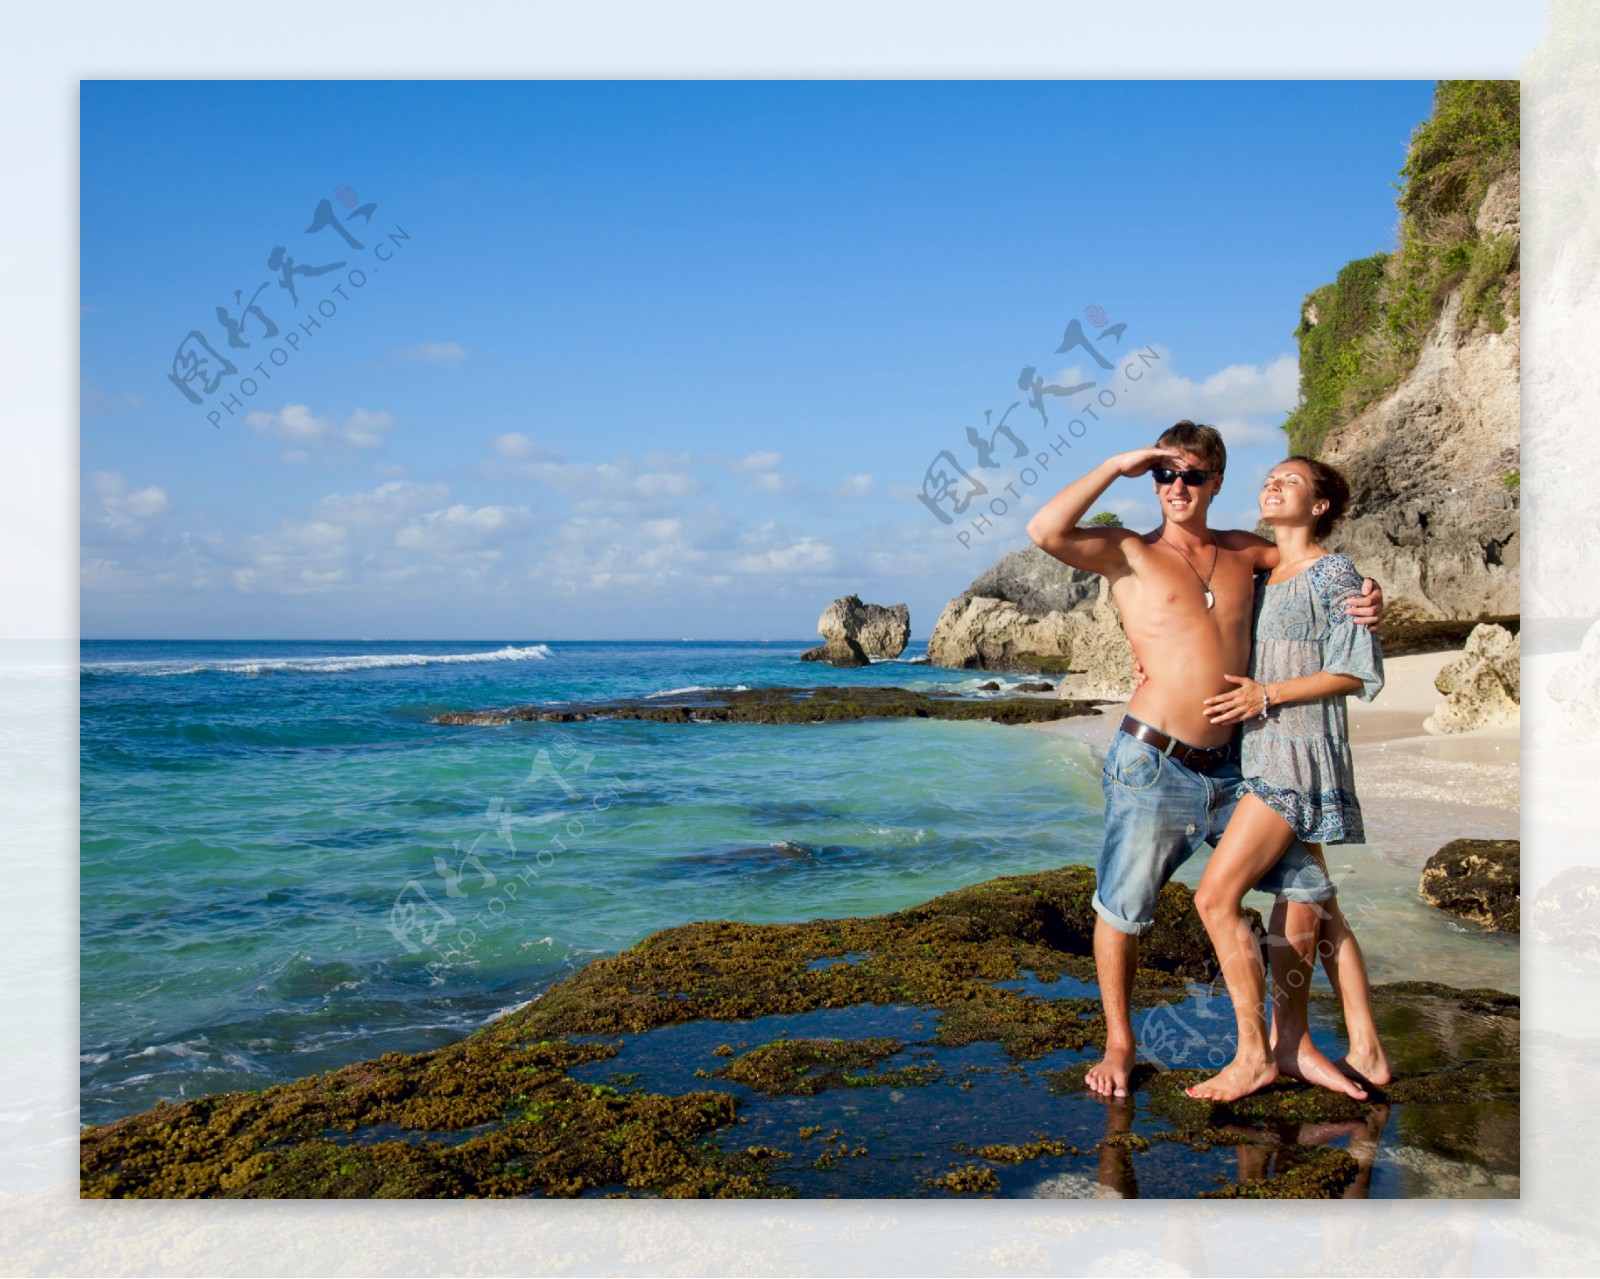 海边游玩的年轻情侣图片